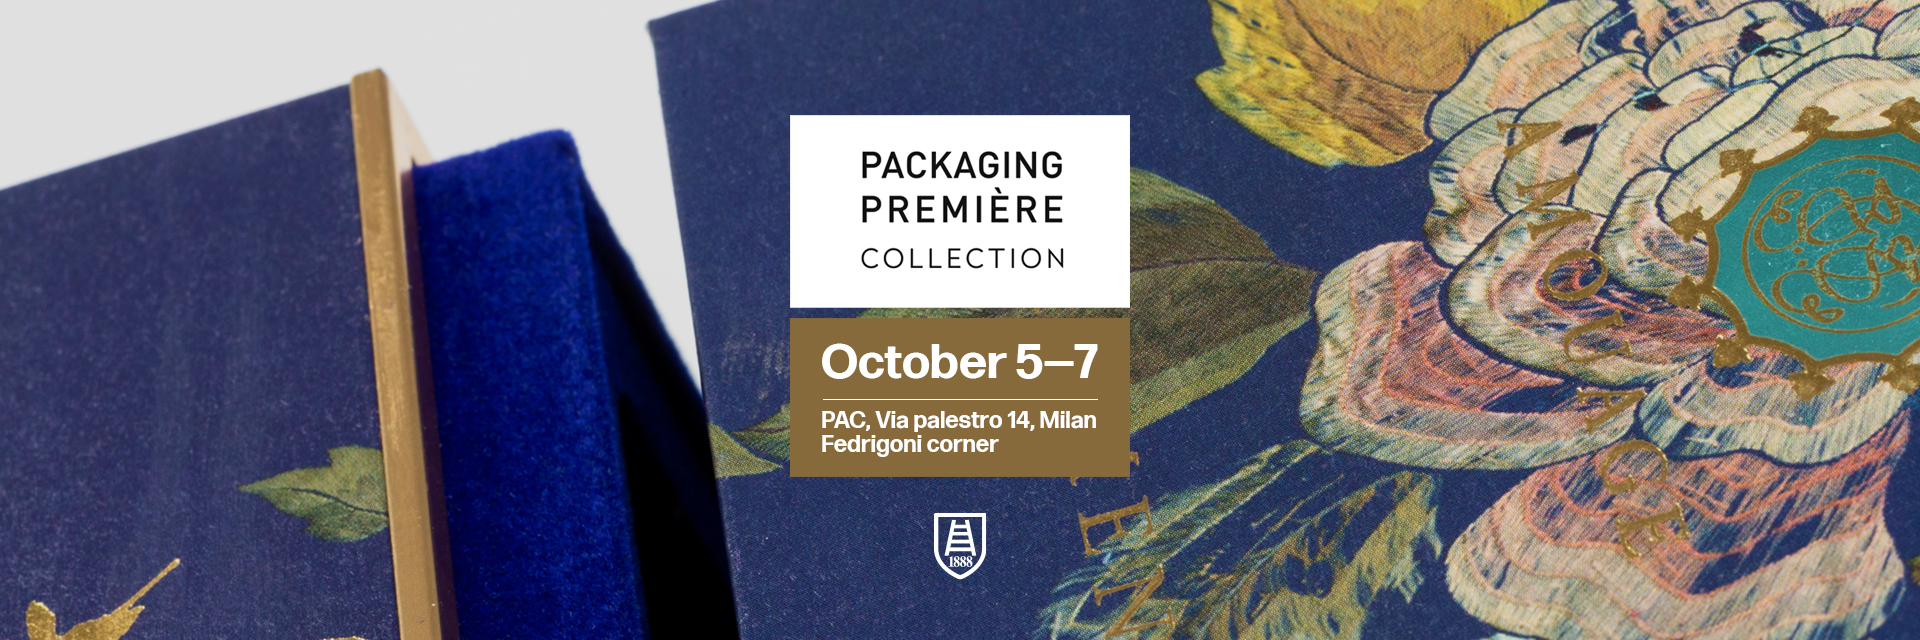 Látogassa meg cégünket a Packaging Premiere Collection eseményen